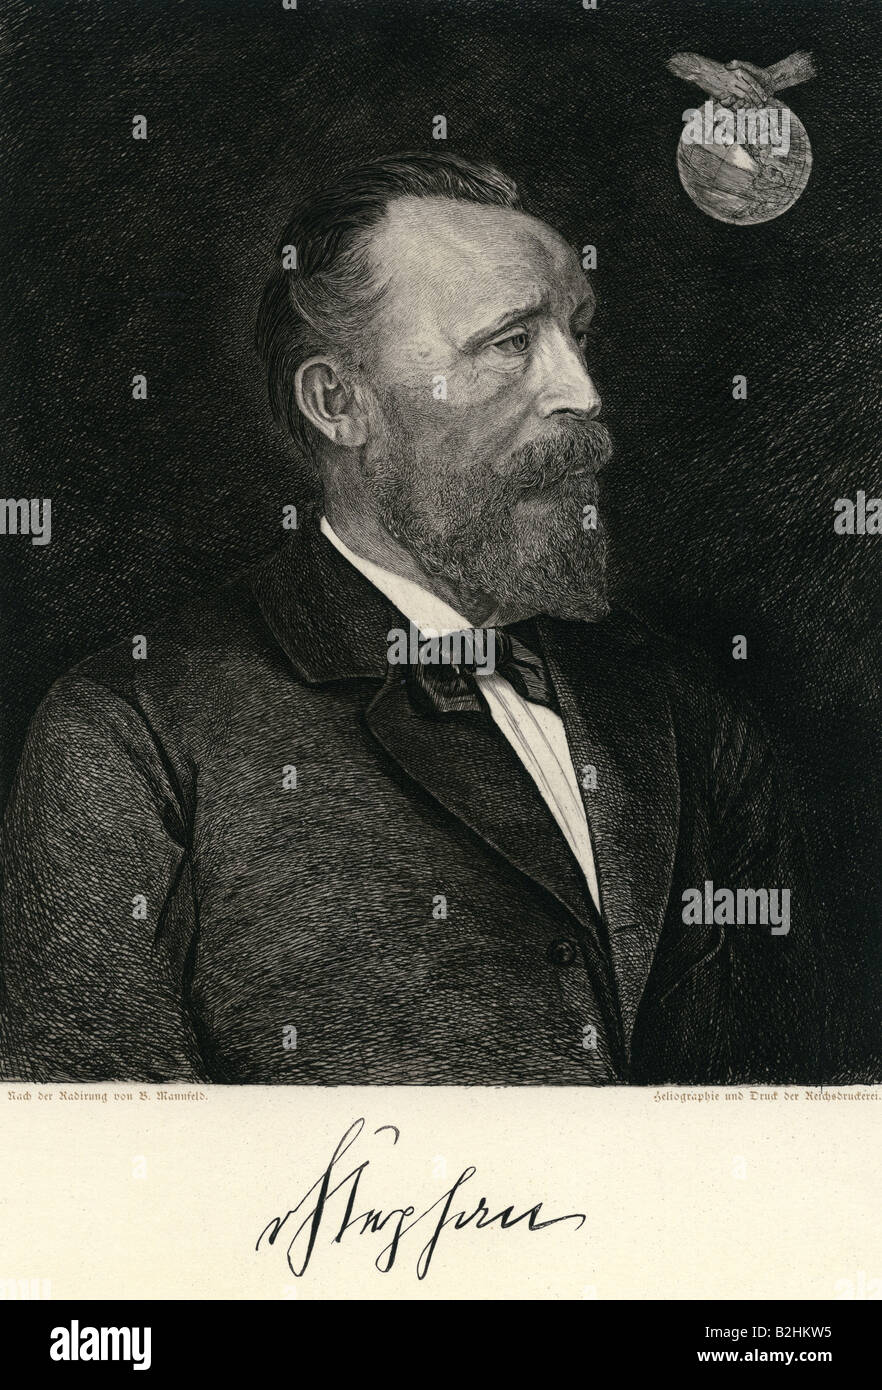 Stephan, Heinrich von, 7.1.1831 - 8.4.1897, funzionario tedesco, ritratto, eliografia dopo l'incisione di B. Mannfeld, circa 1900, Foto Stock